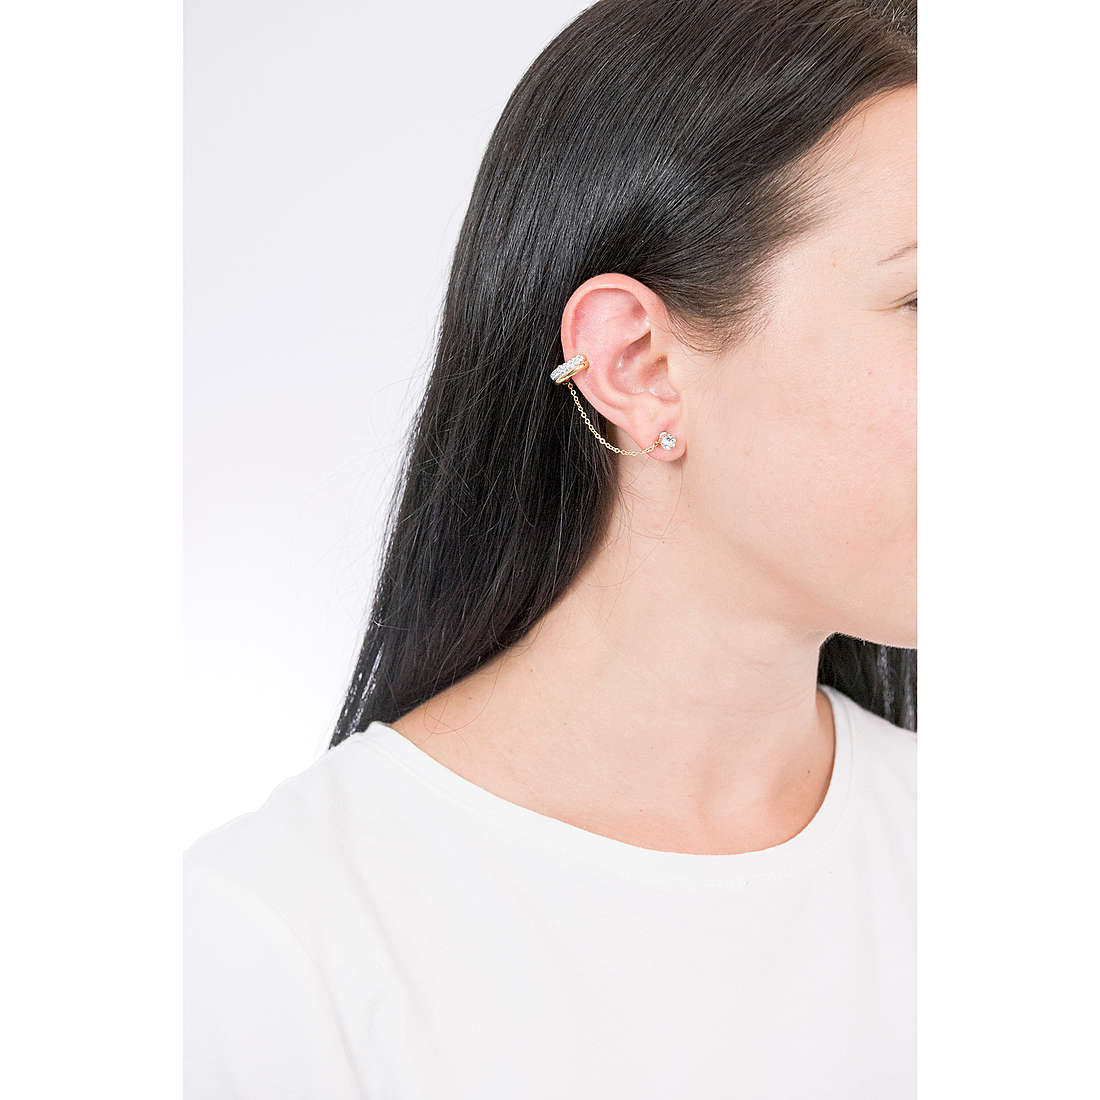 Swarovski earrings Time woman 5566005 wearing